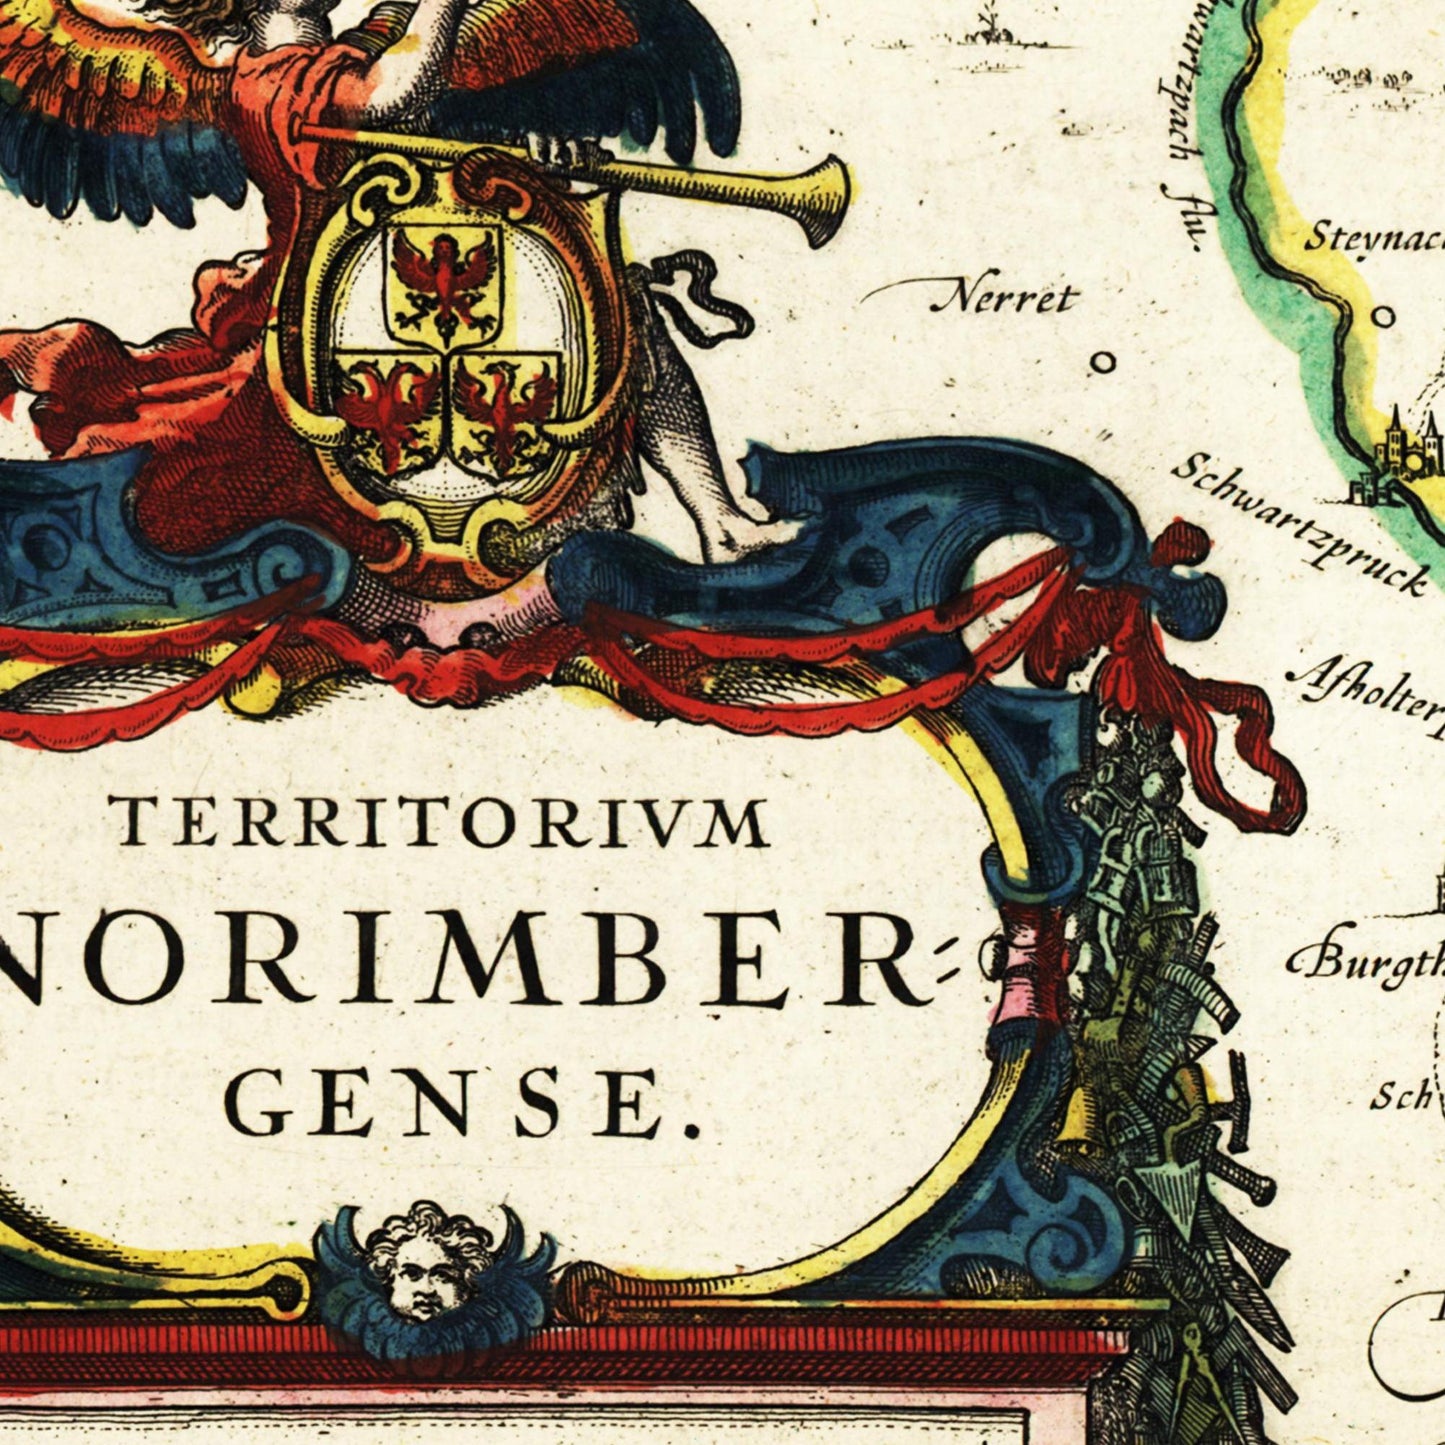 Historische Landkarte Nürnberg um 1647